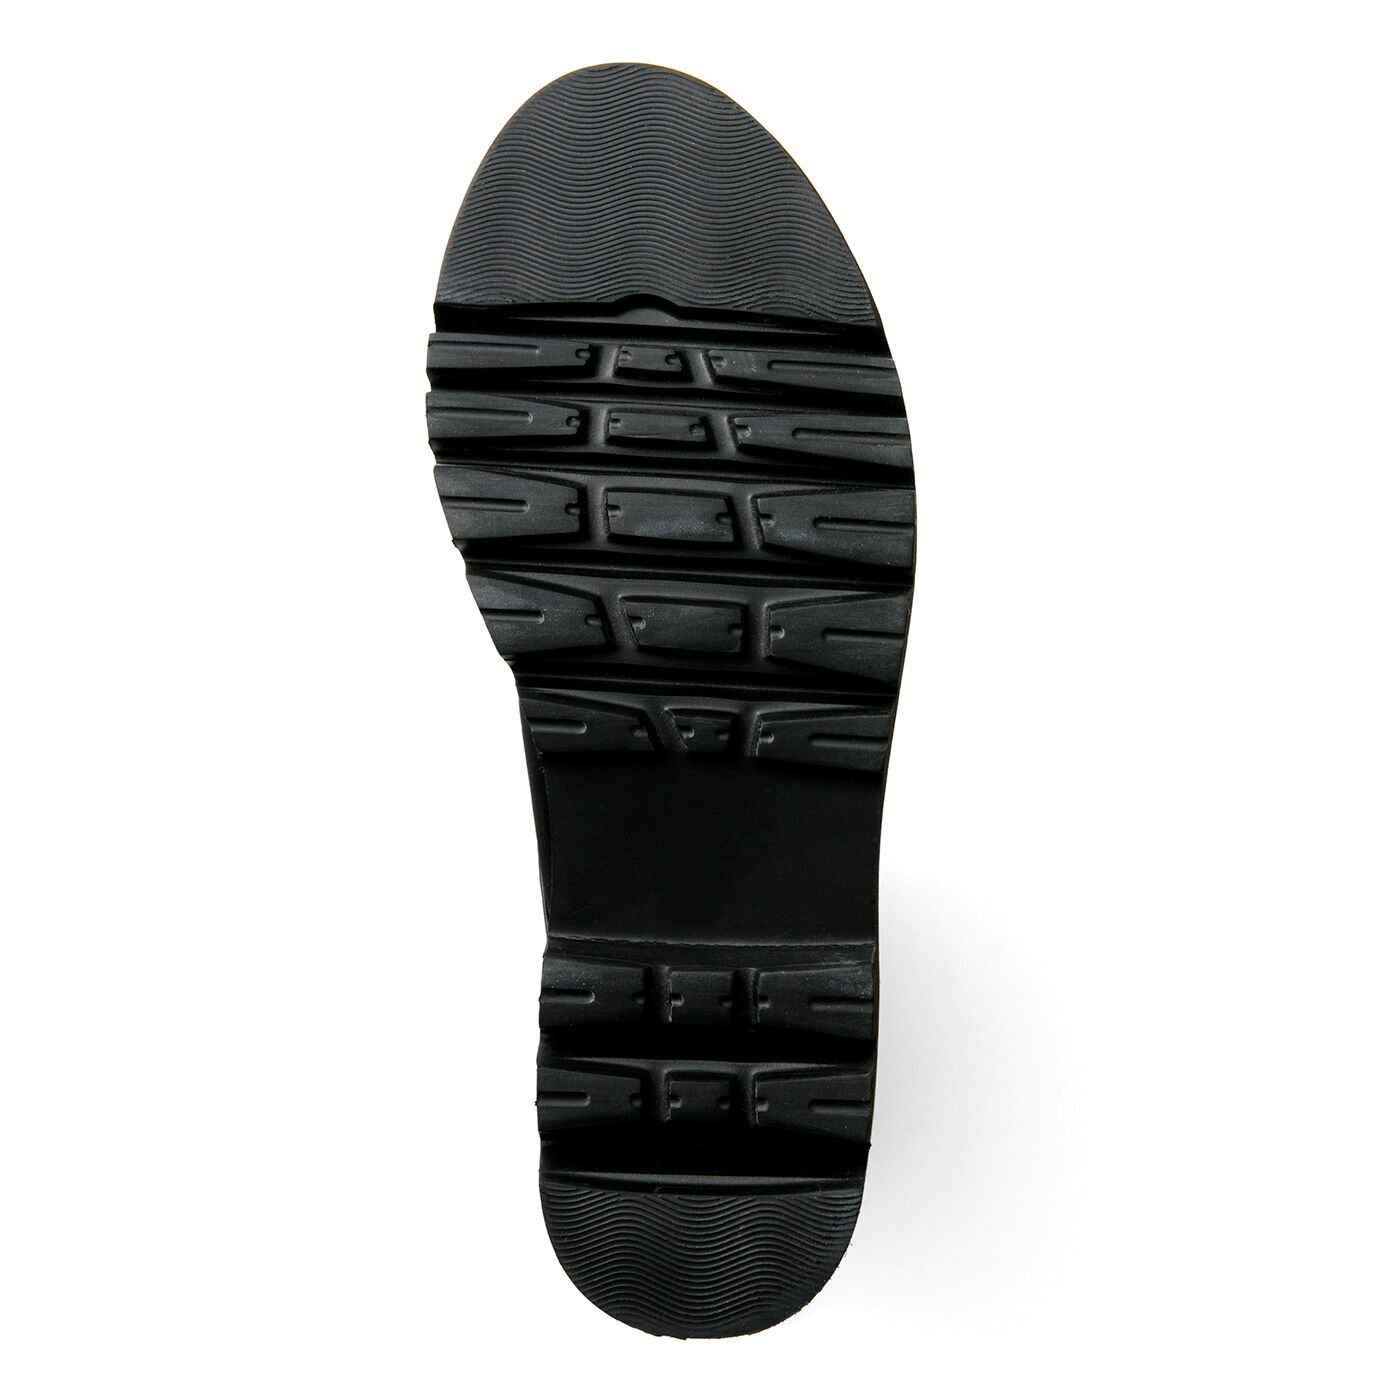 L'AMIPLUS|ラミプリュス　ストレッチ素材が伸びやかで心地よい 脱ぎ履きぐーんとらく マニッシュブーツ|SOLE 凹凸の足底で滑りにくい。